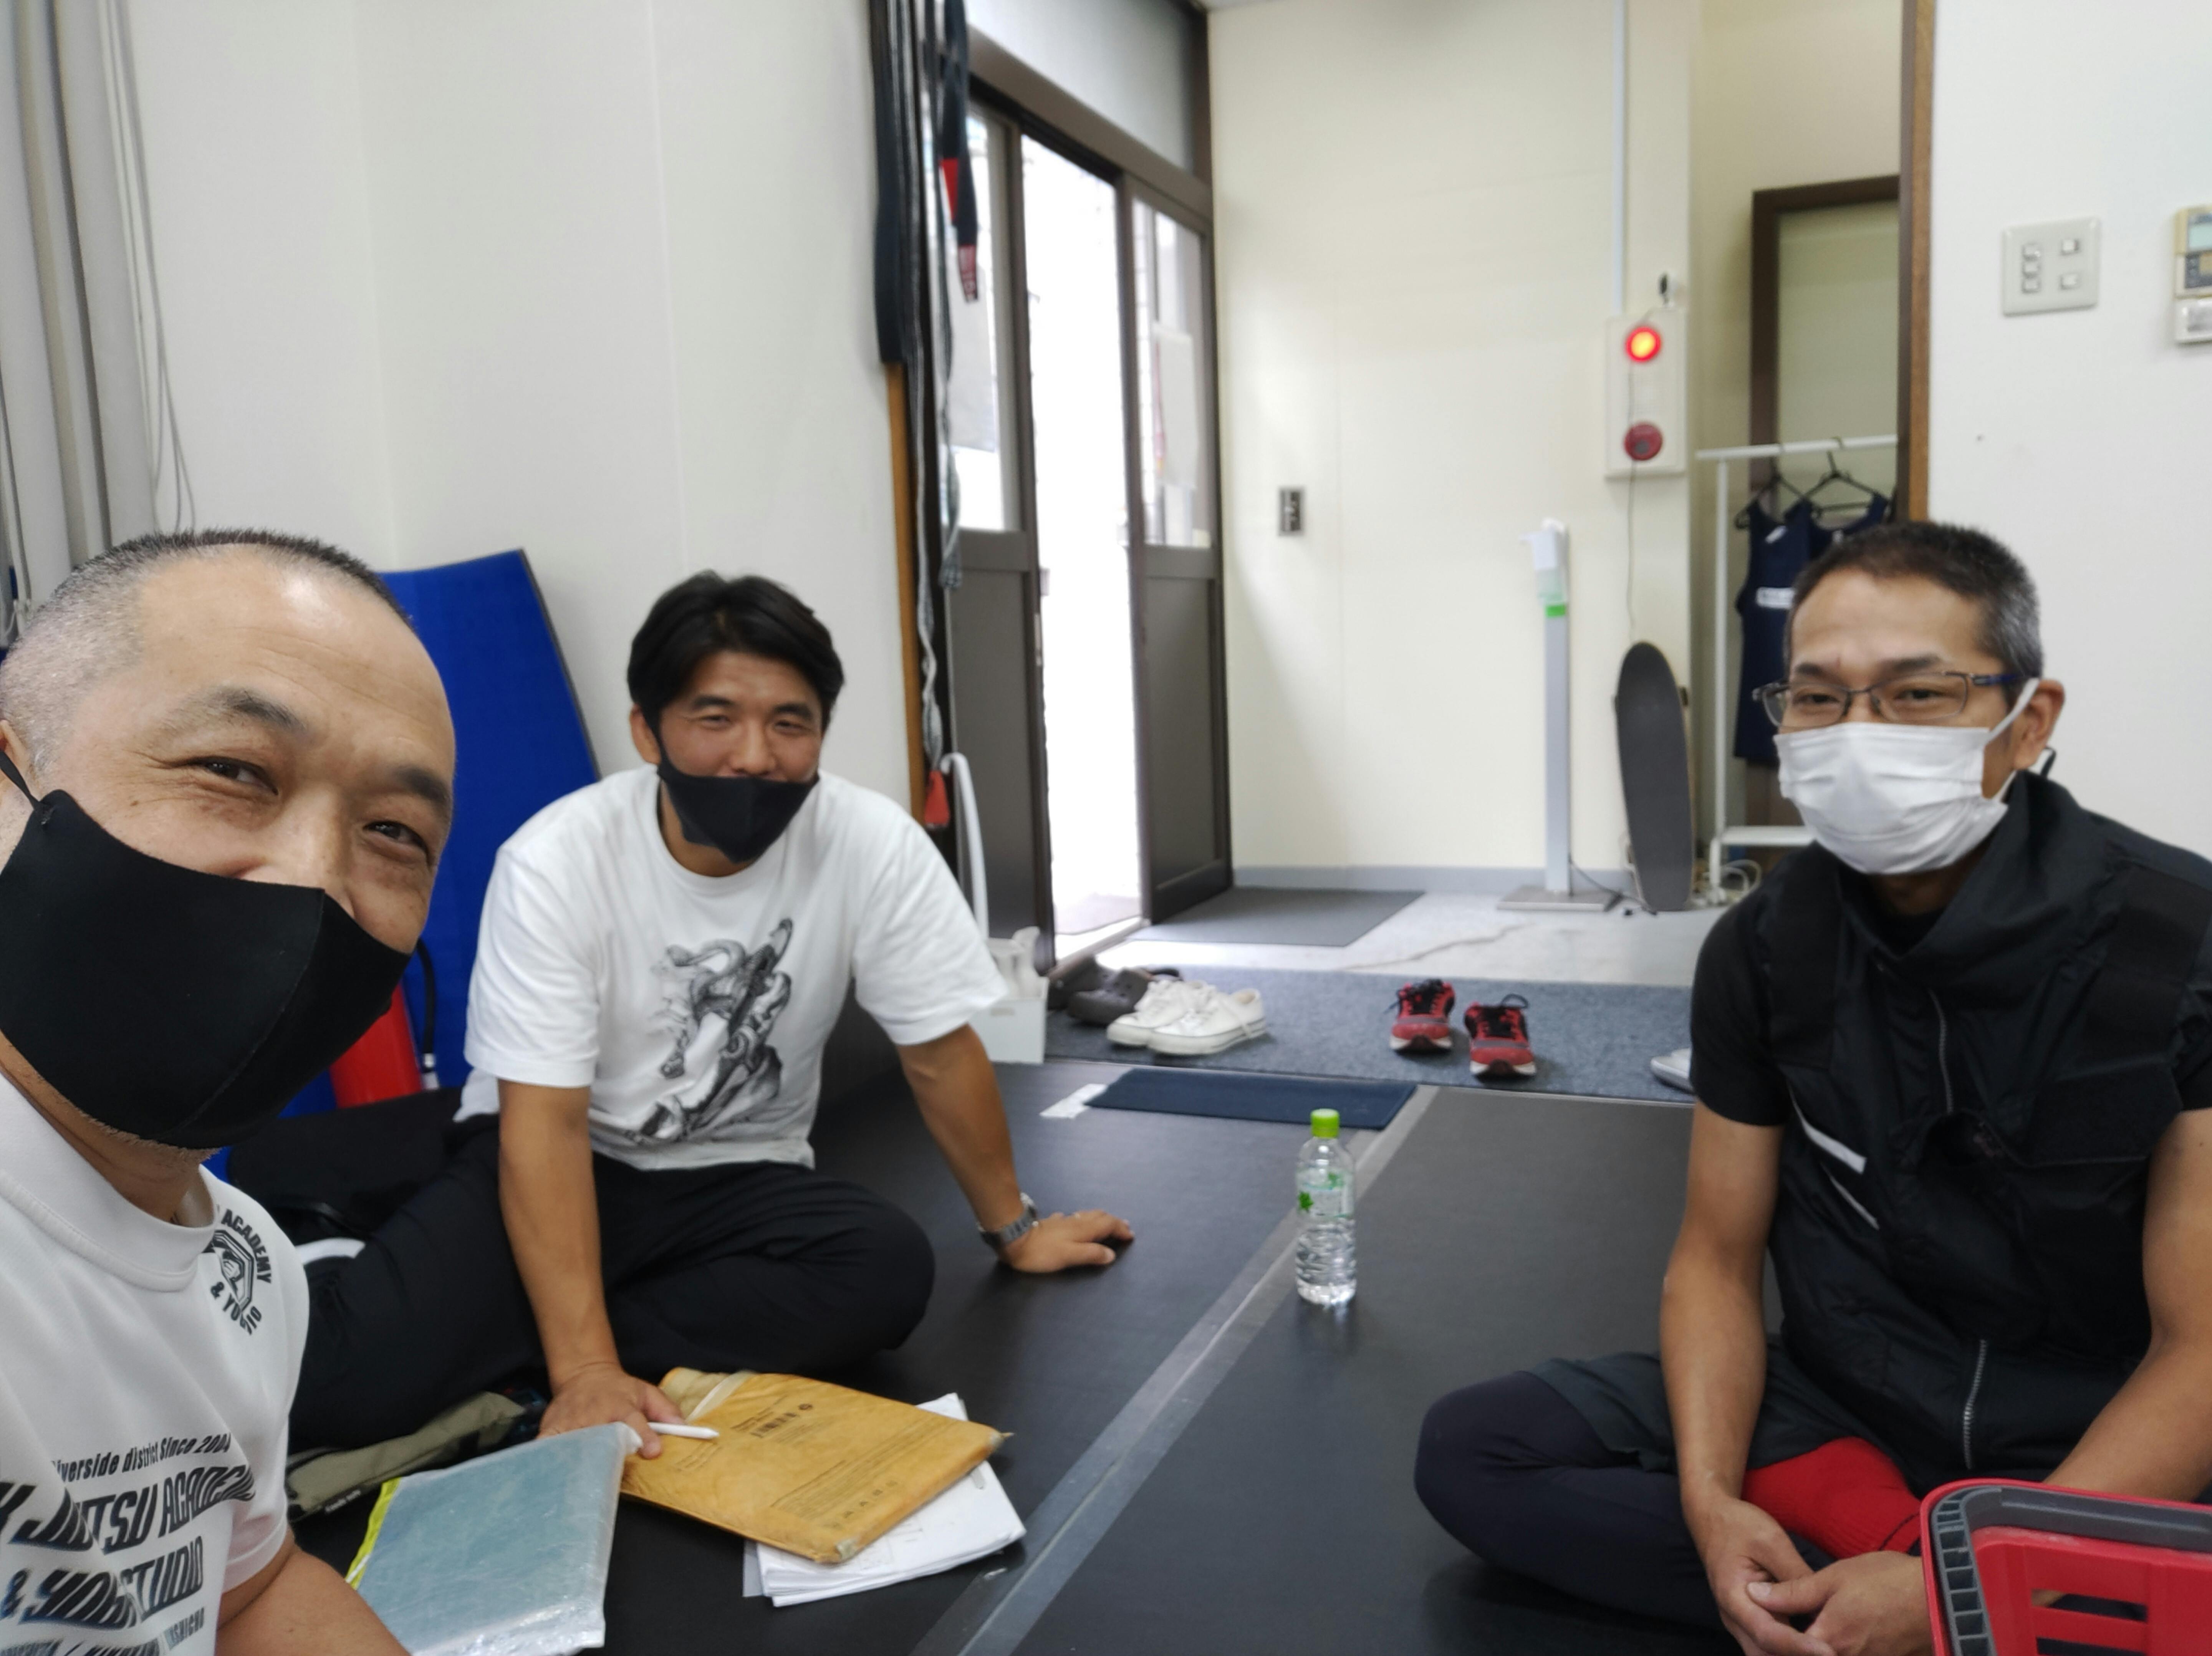 これがシン・マックス柔術アカデミーの最終段階、ホイス・グレイシー柔術アカデミー東京設立プロジェクトチーム初の顔合わせの